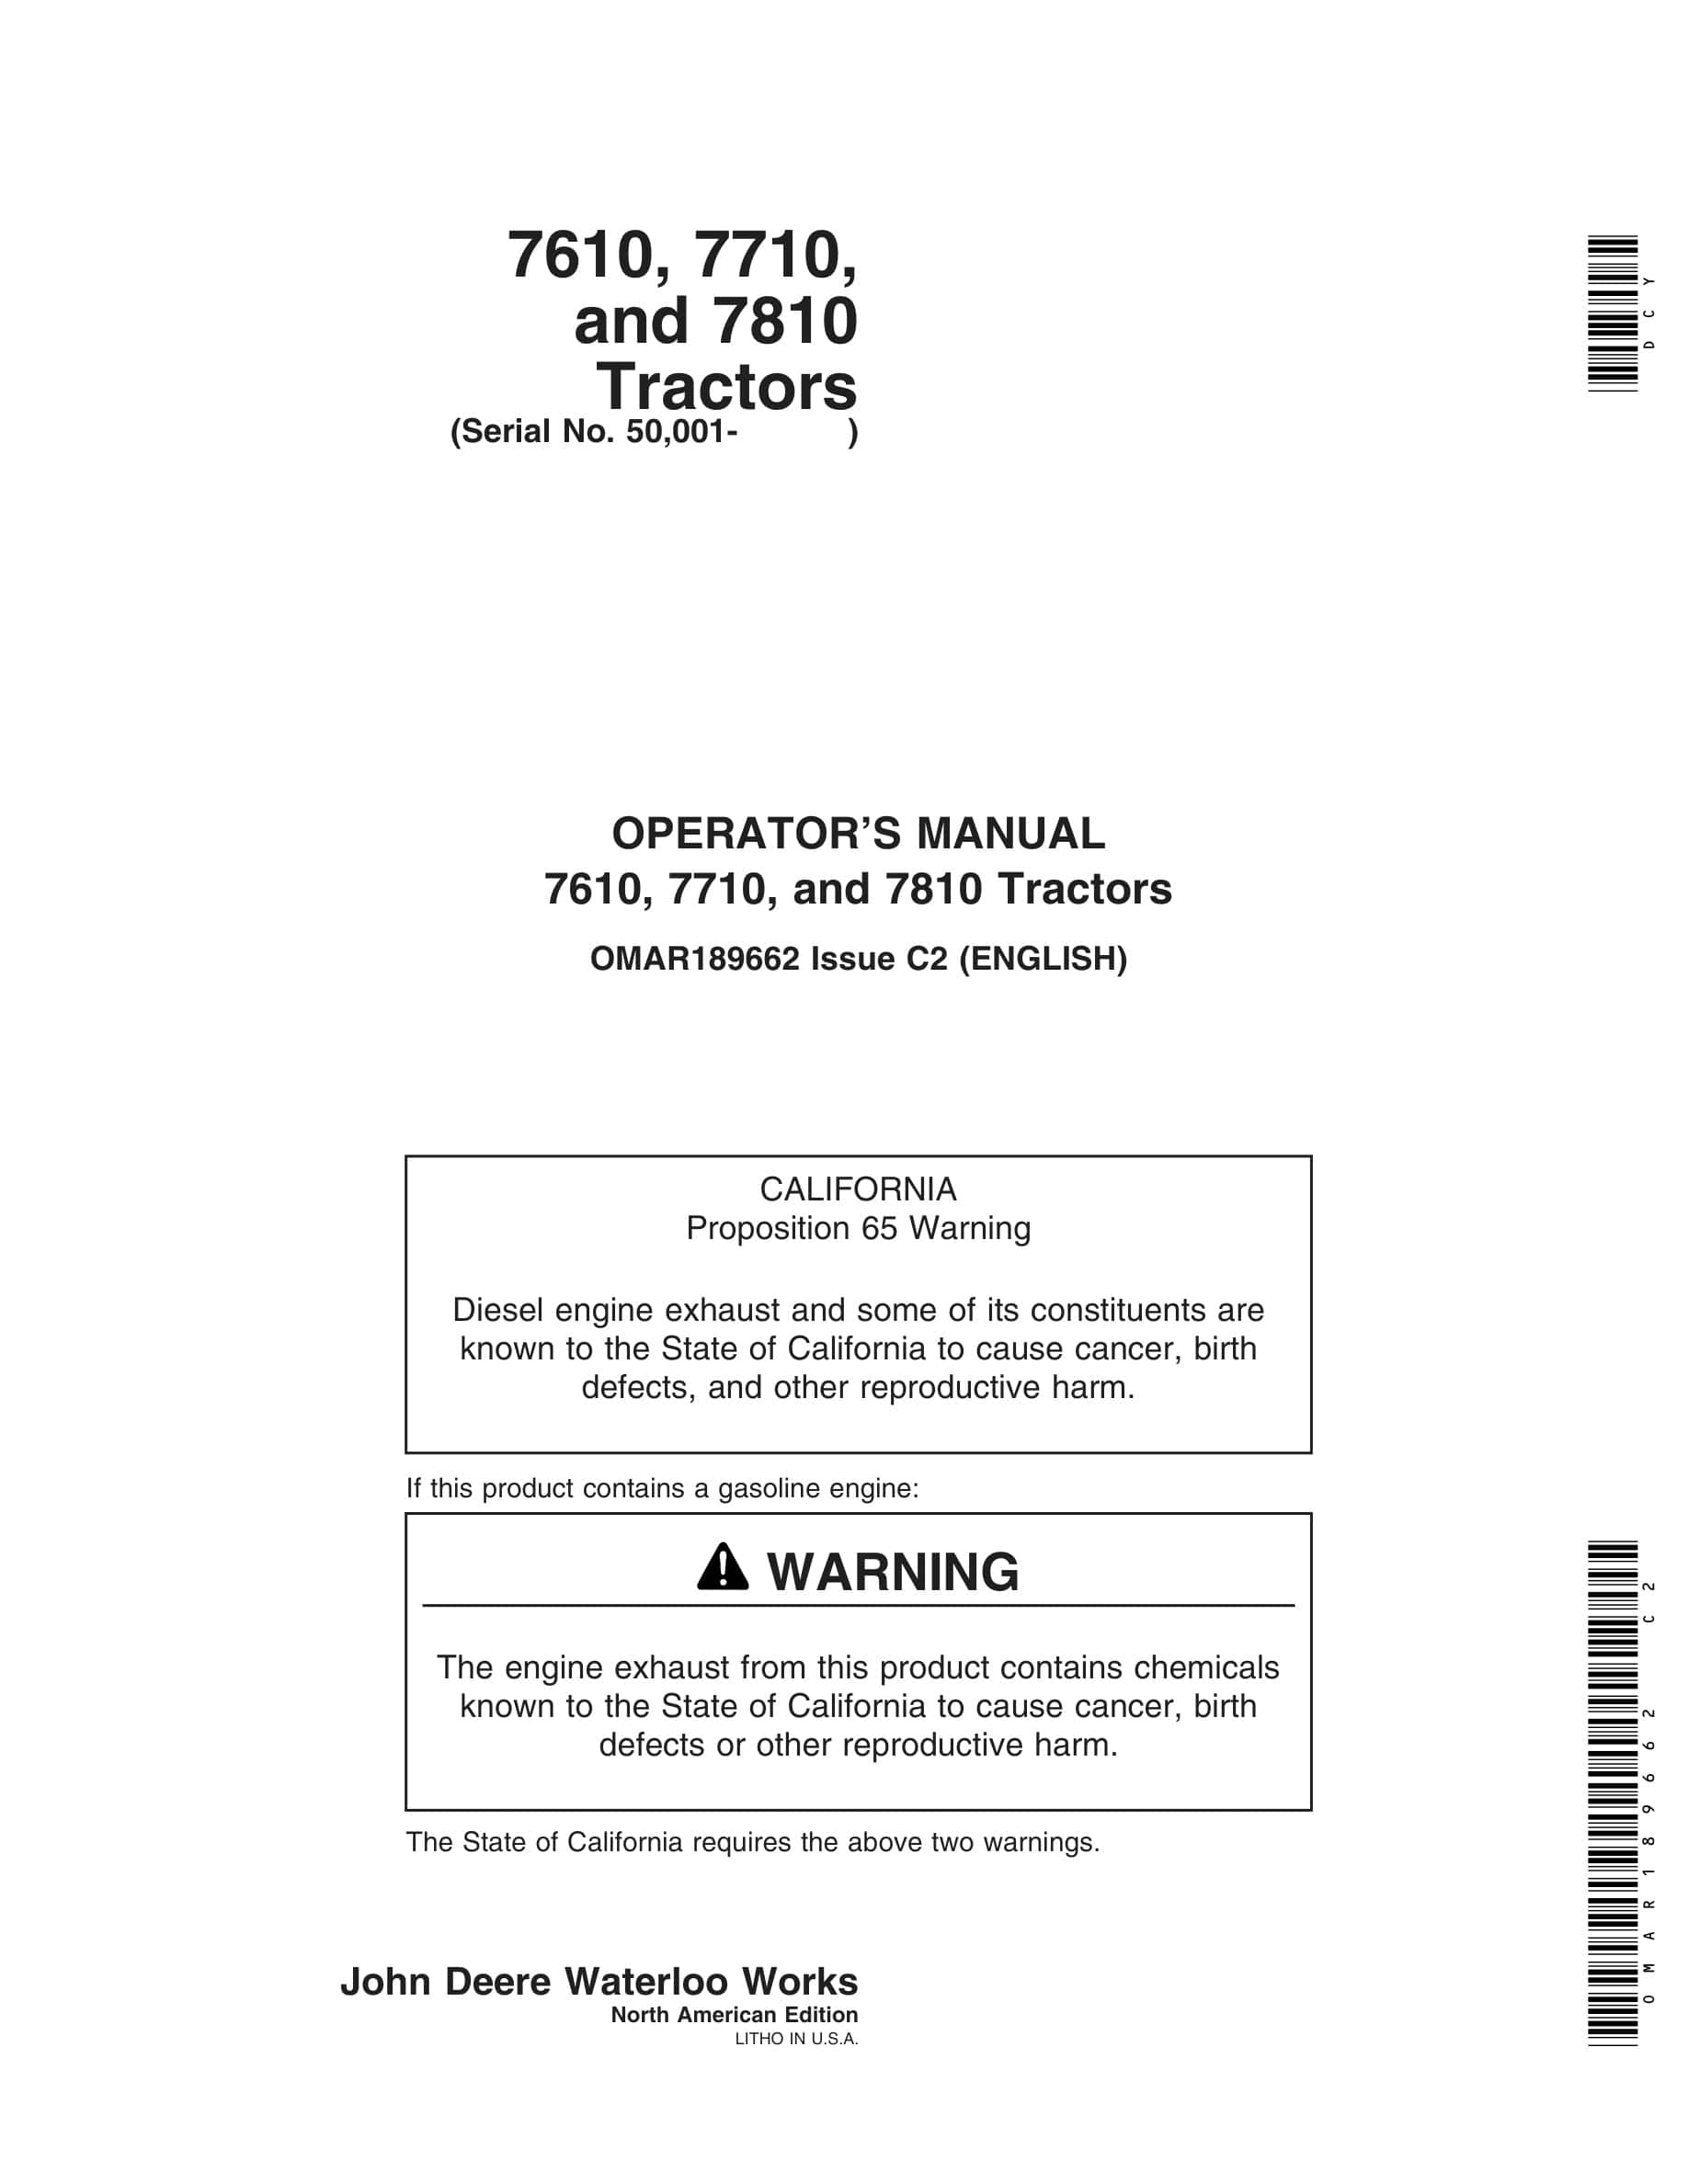 John Deere 7610, 7710, and 7810 Tractor Operator Manual OMAR189662-1